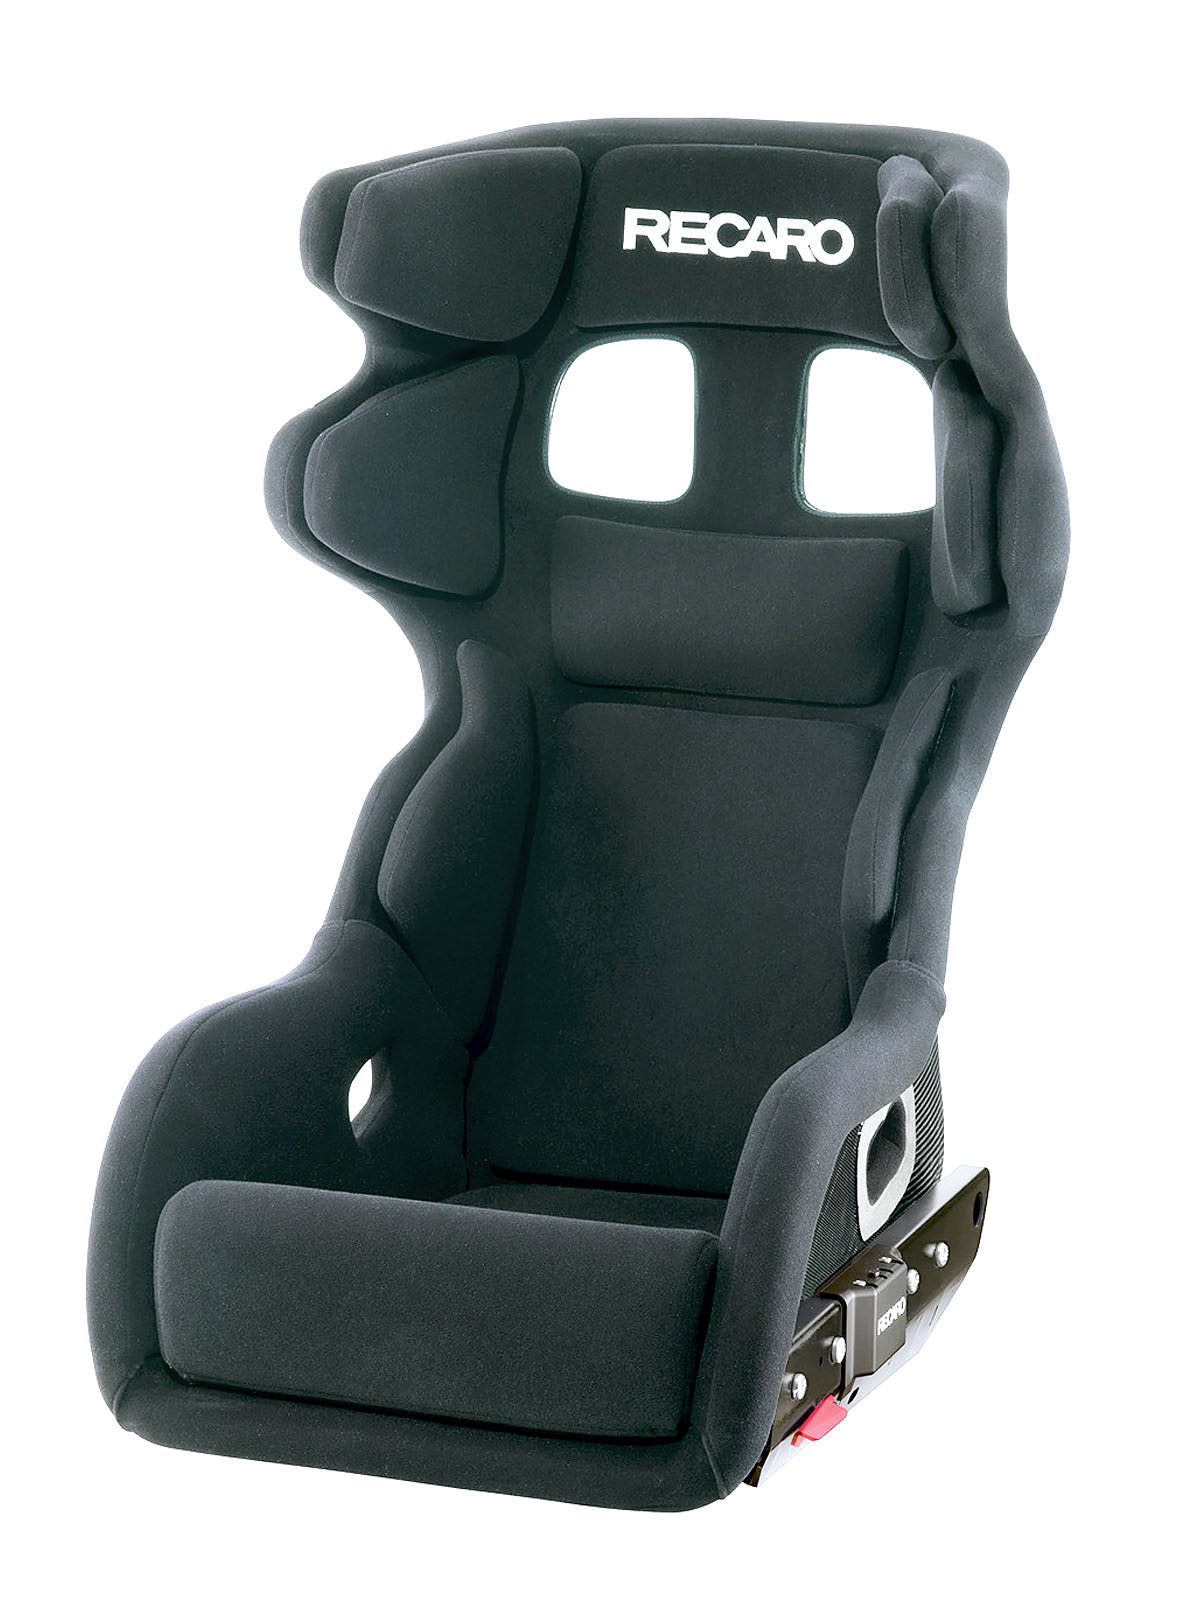 Recaro P1300 GT LW Carbon Kevlar Racing Seat